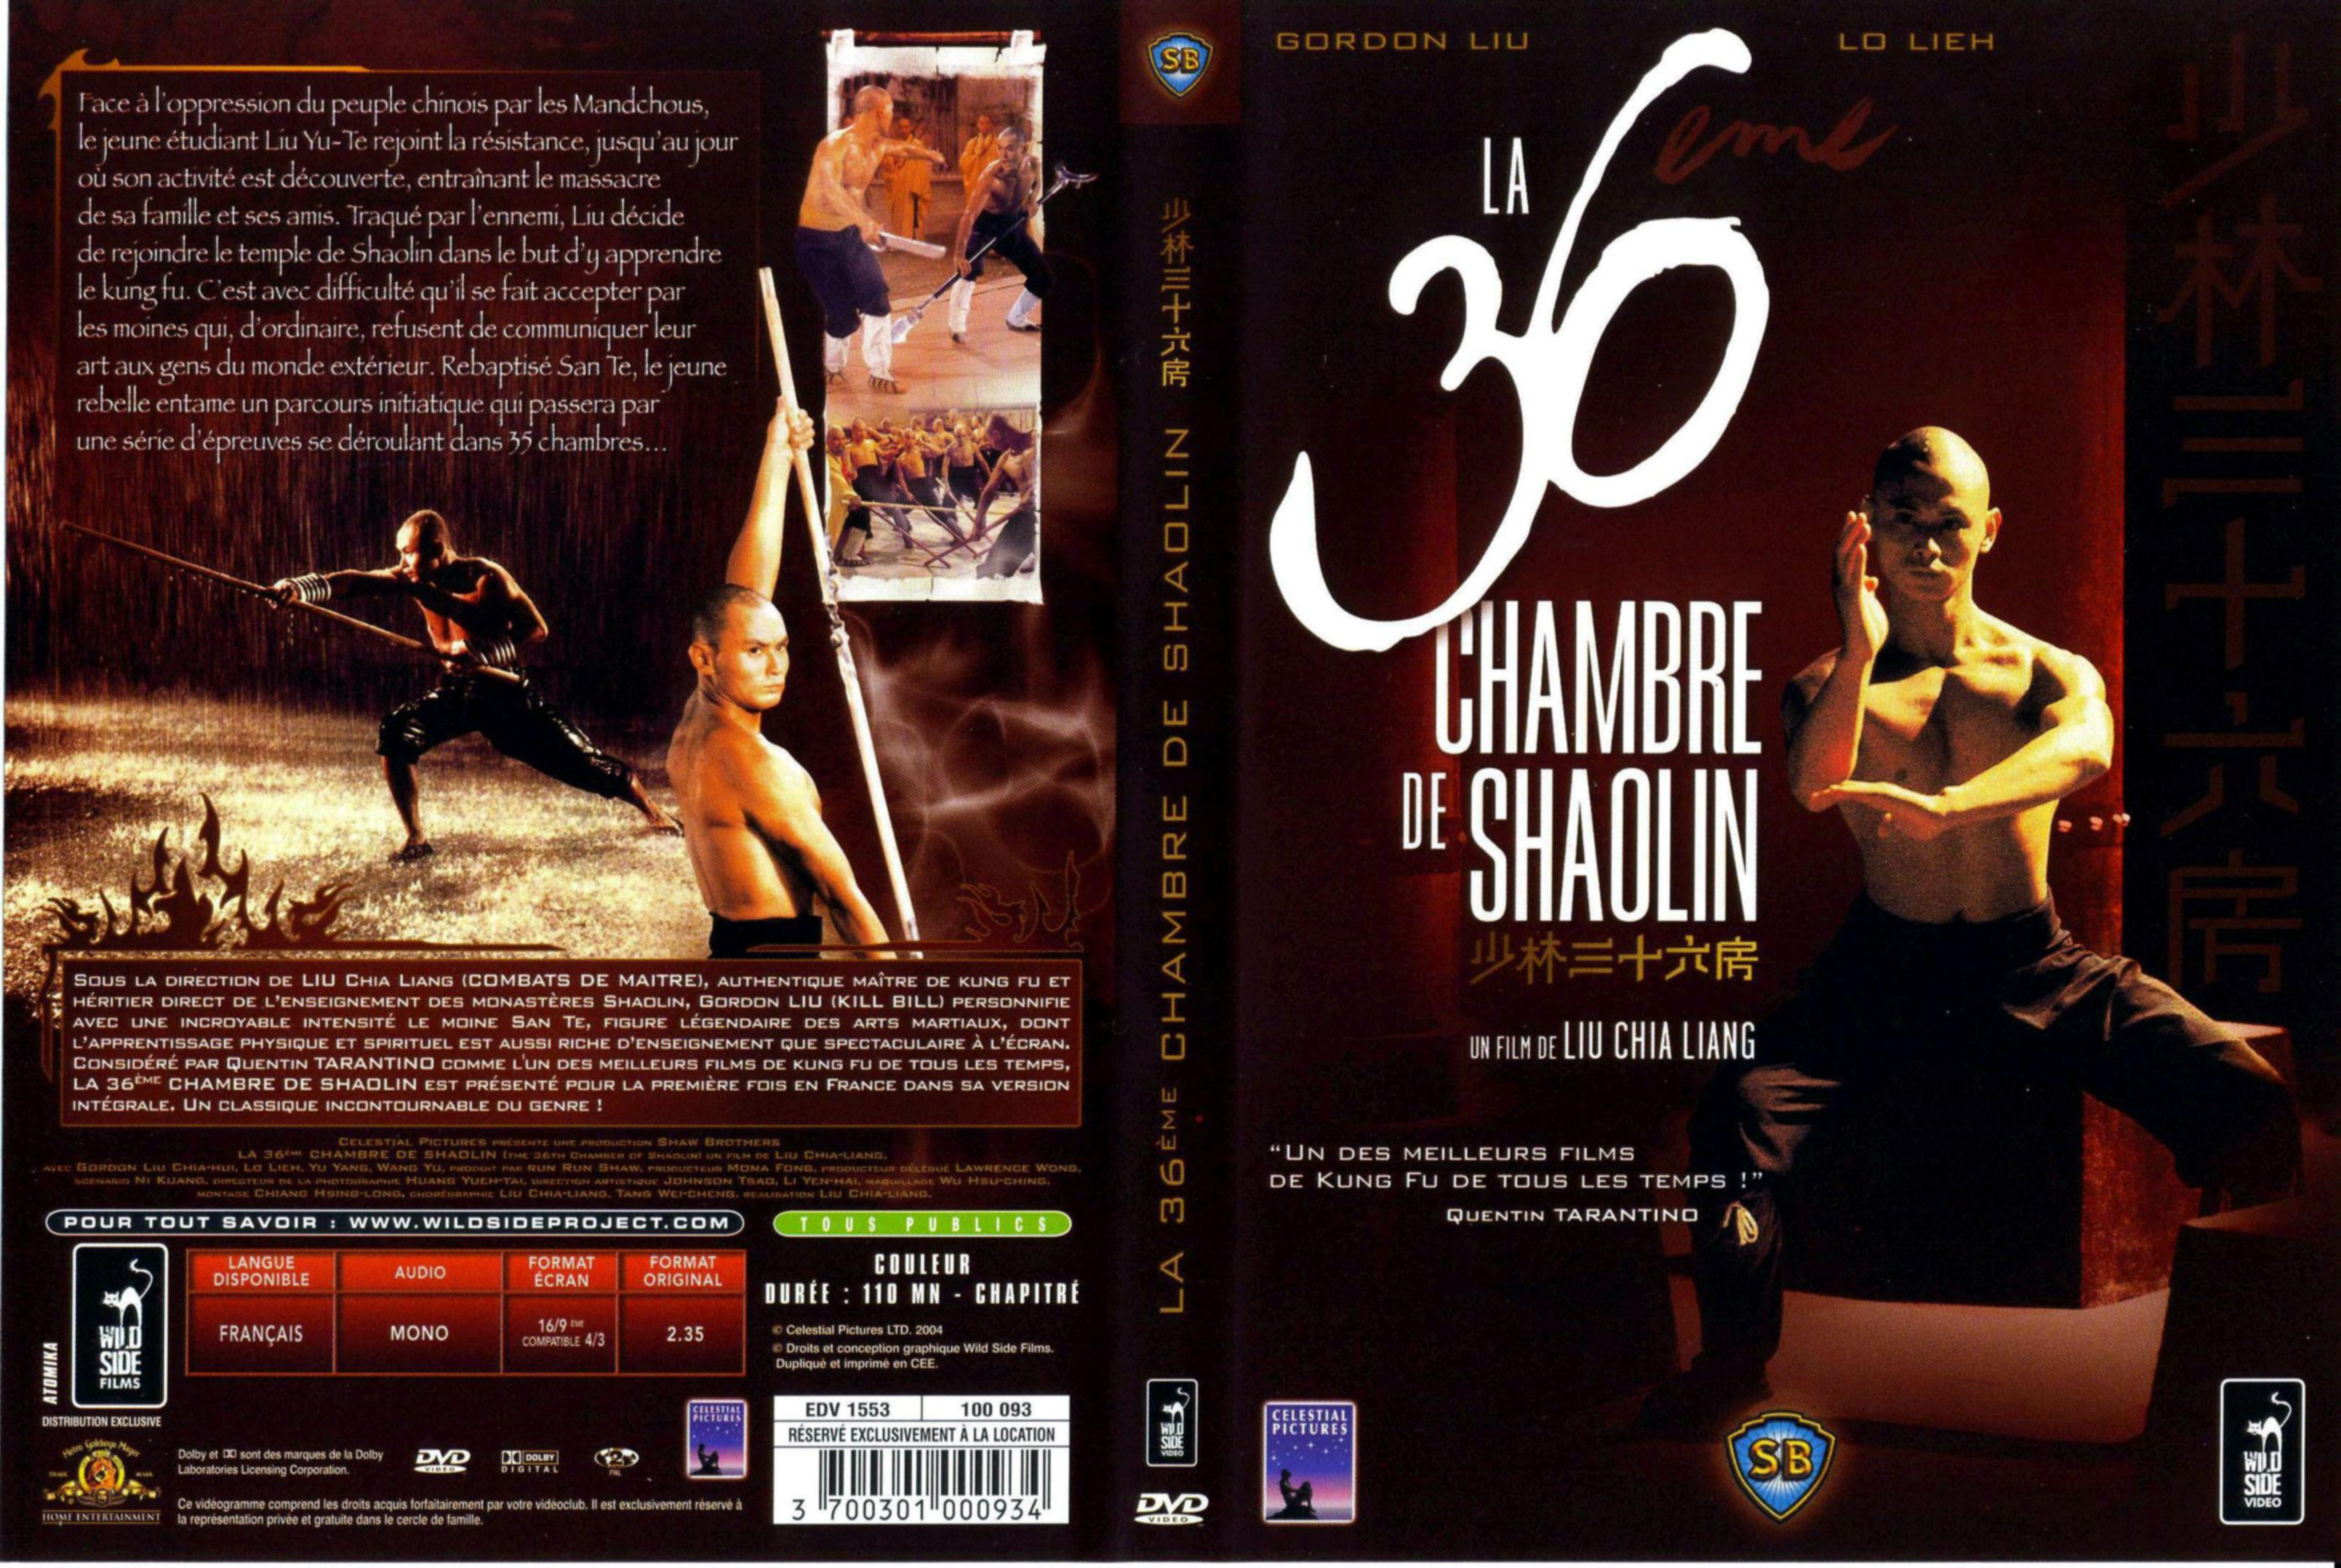 Jaquette DVD La 36 me chambre de shaolin v2